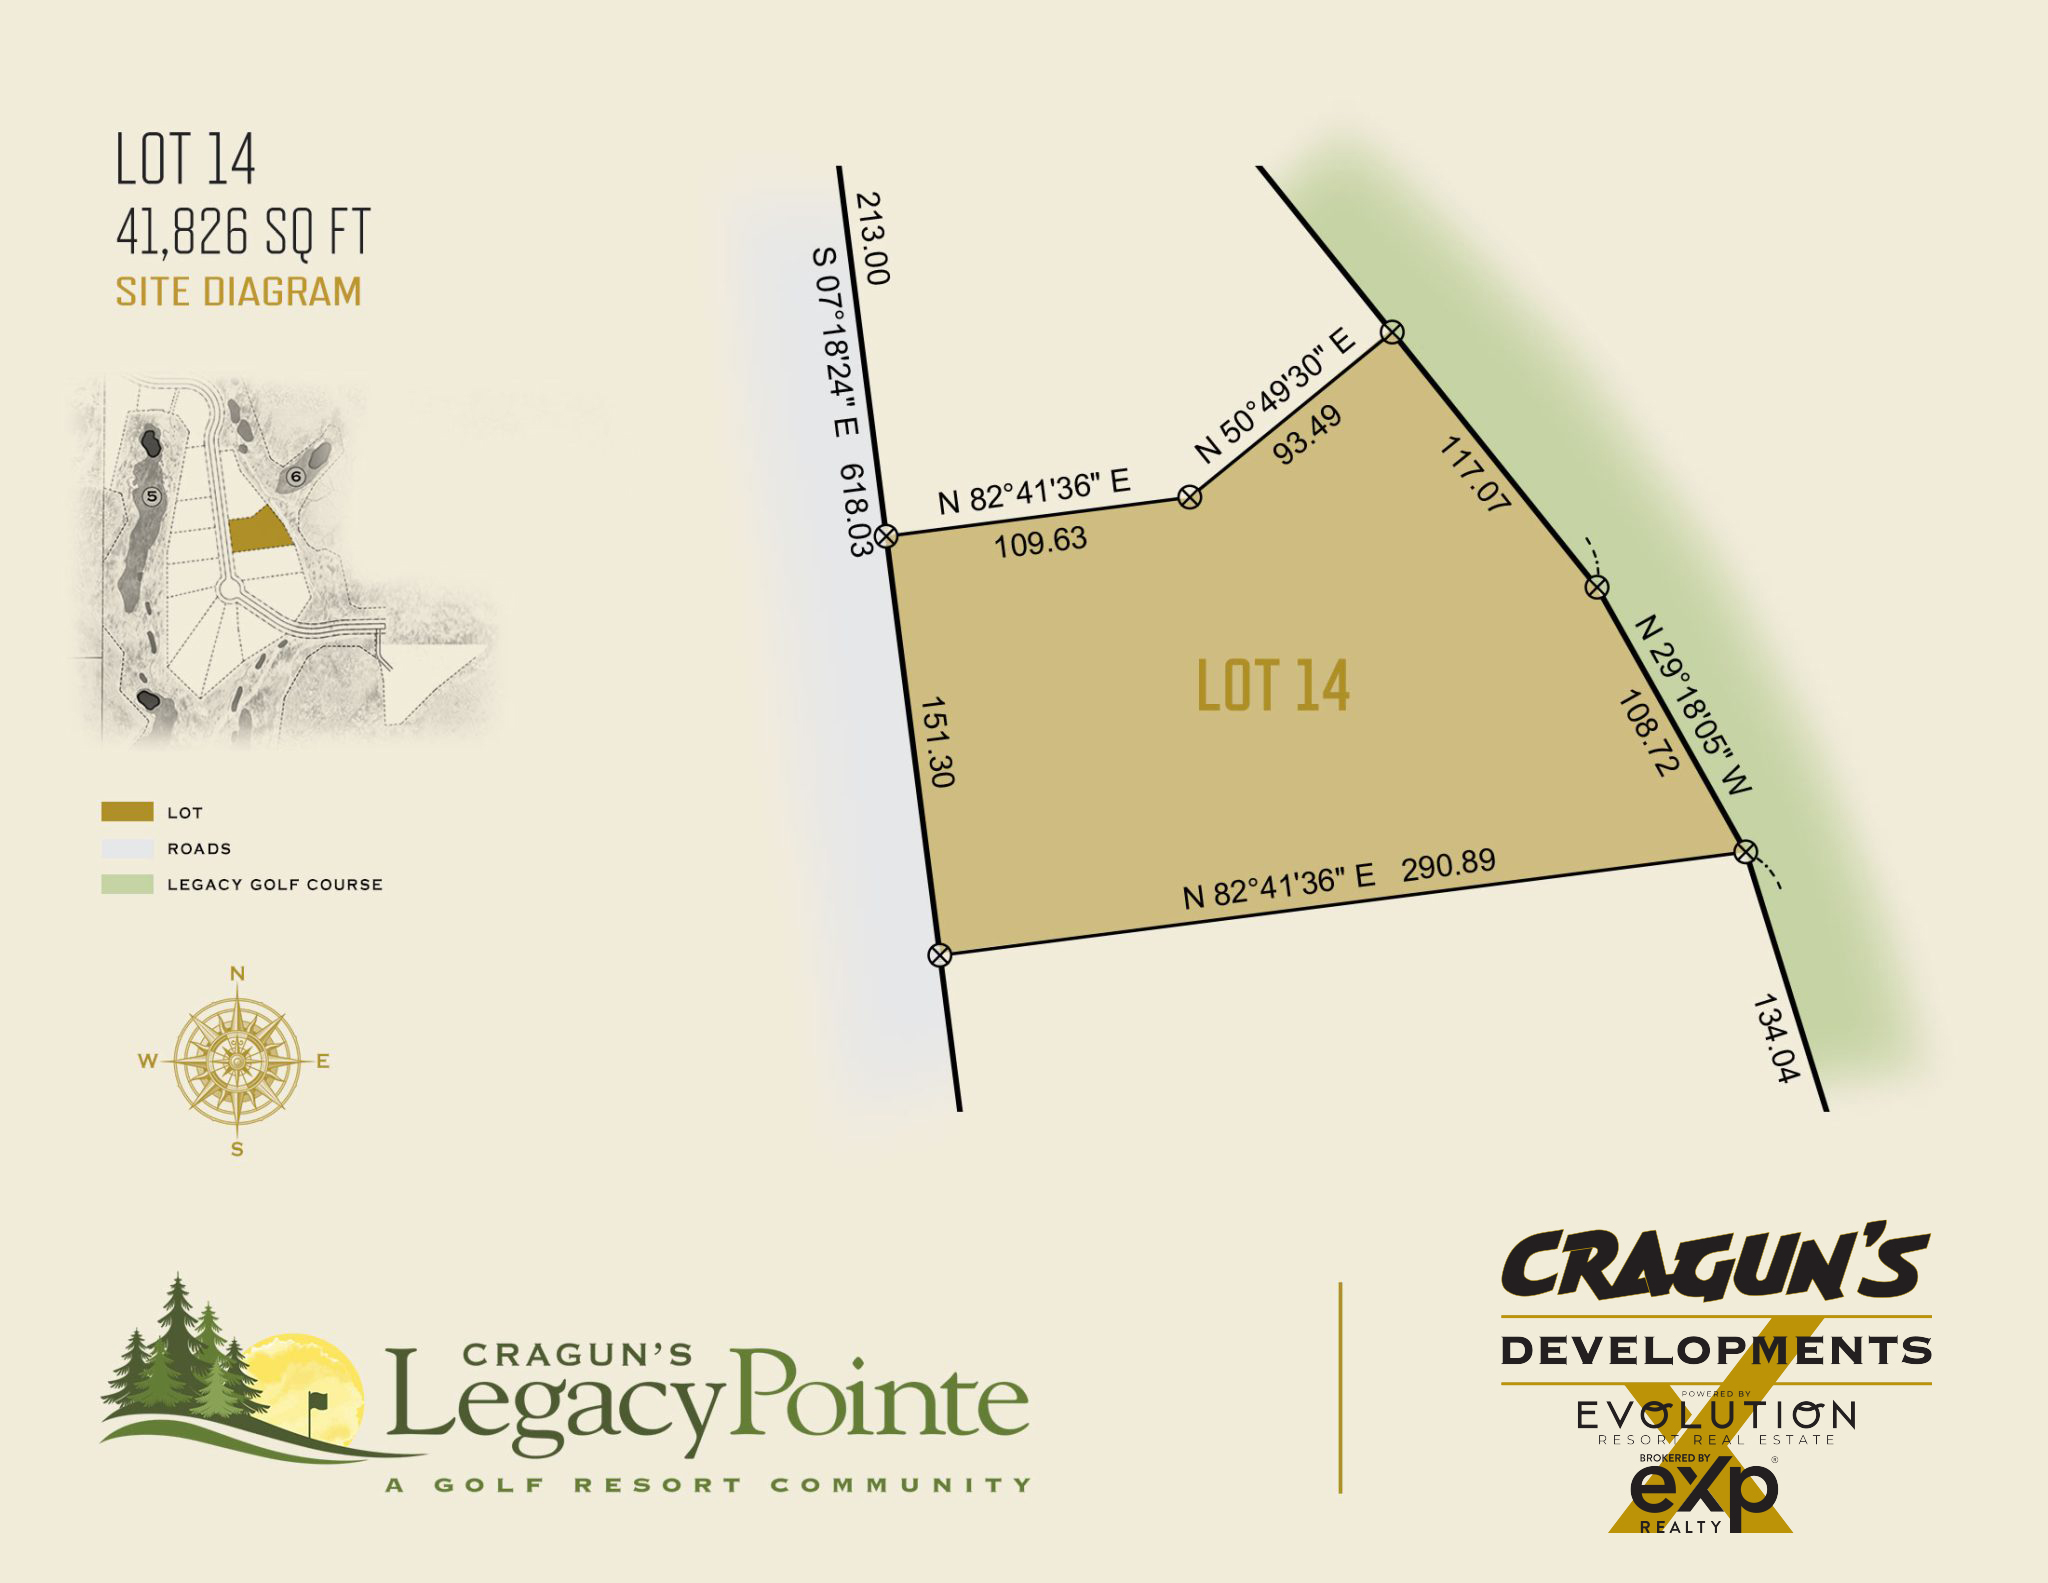 Legacy Pointe Lot 14 at Cragun's Developments in Brainerd, MN